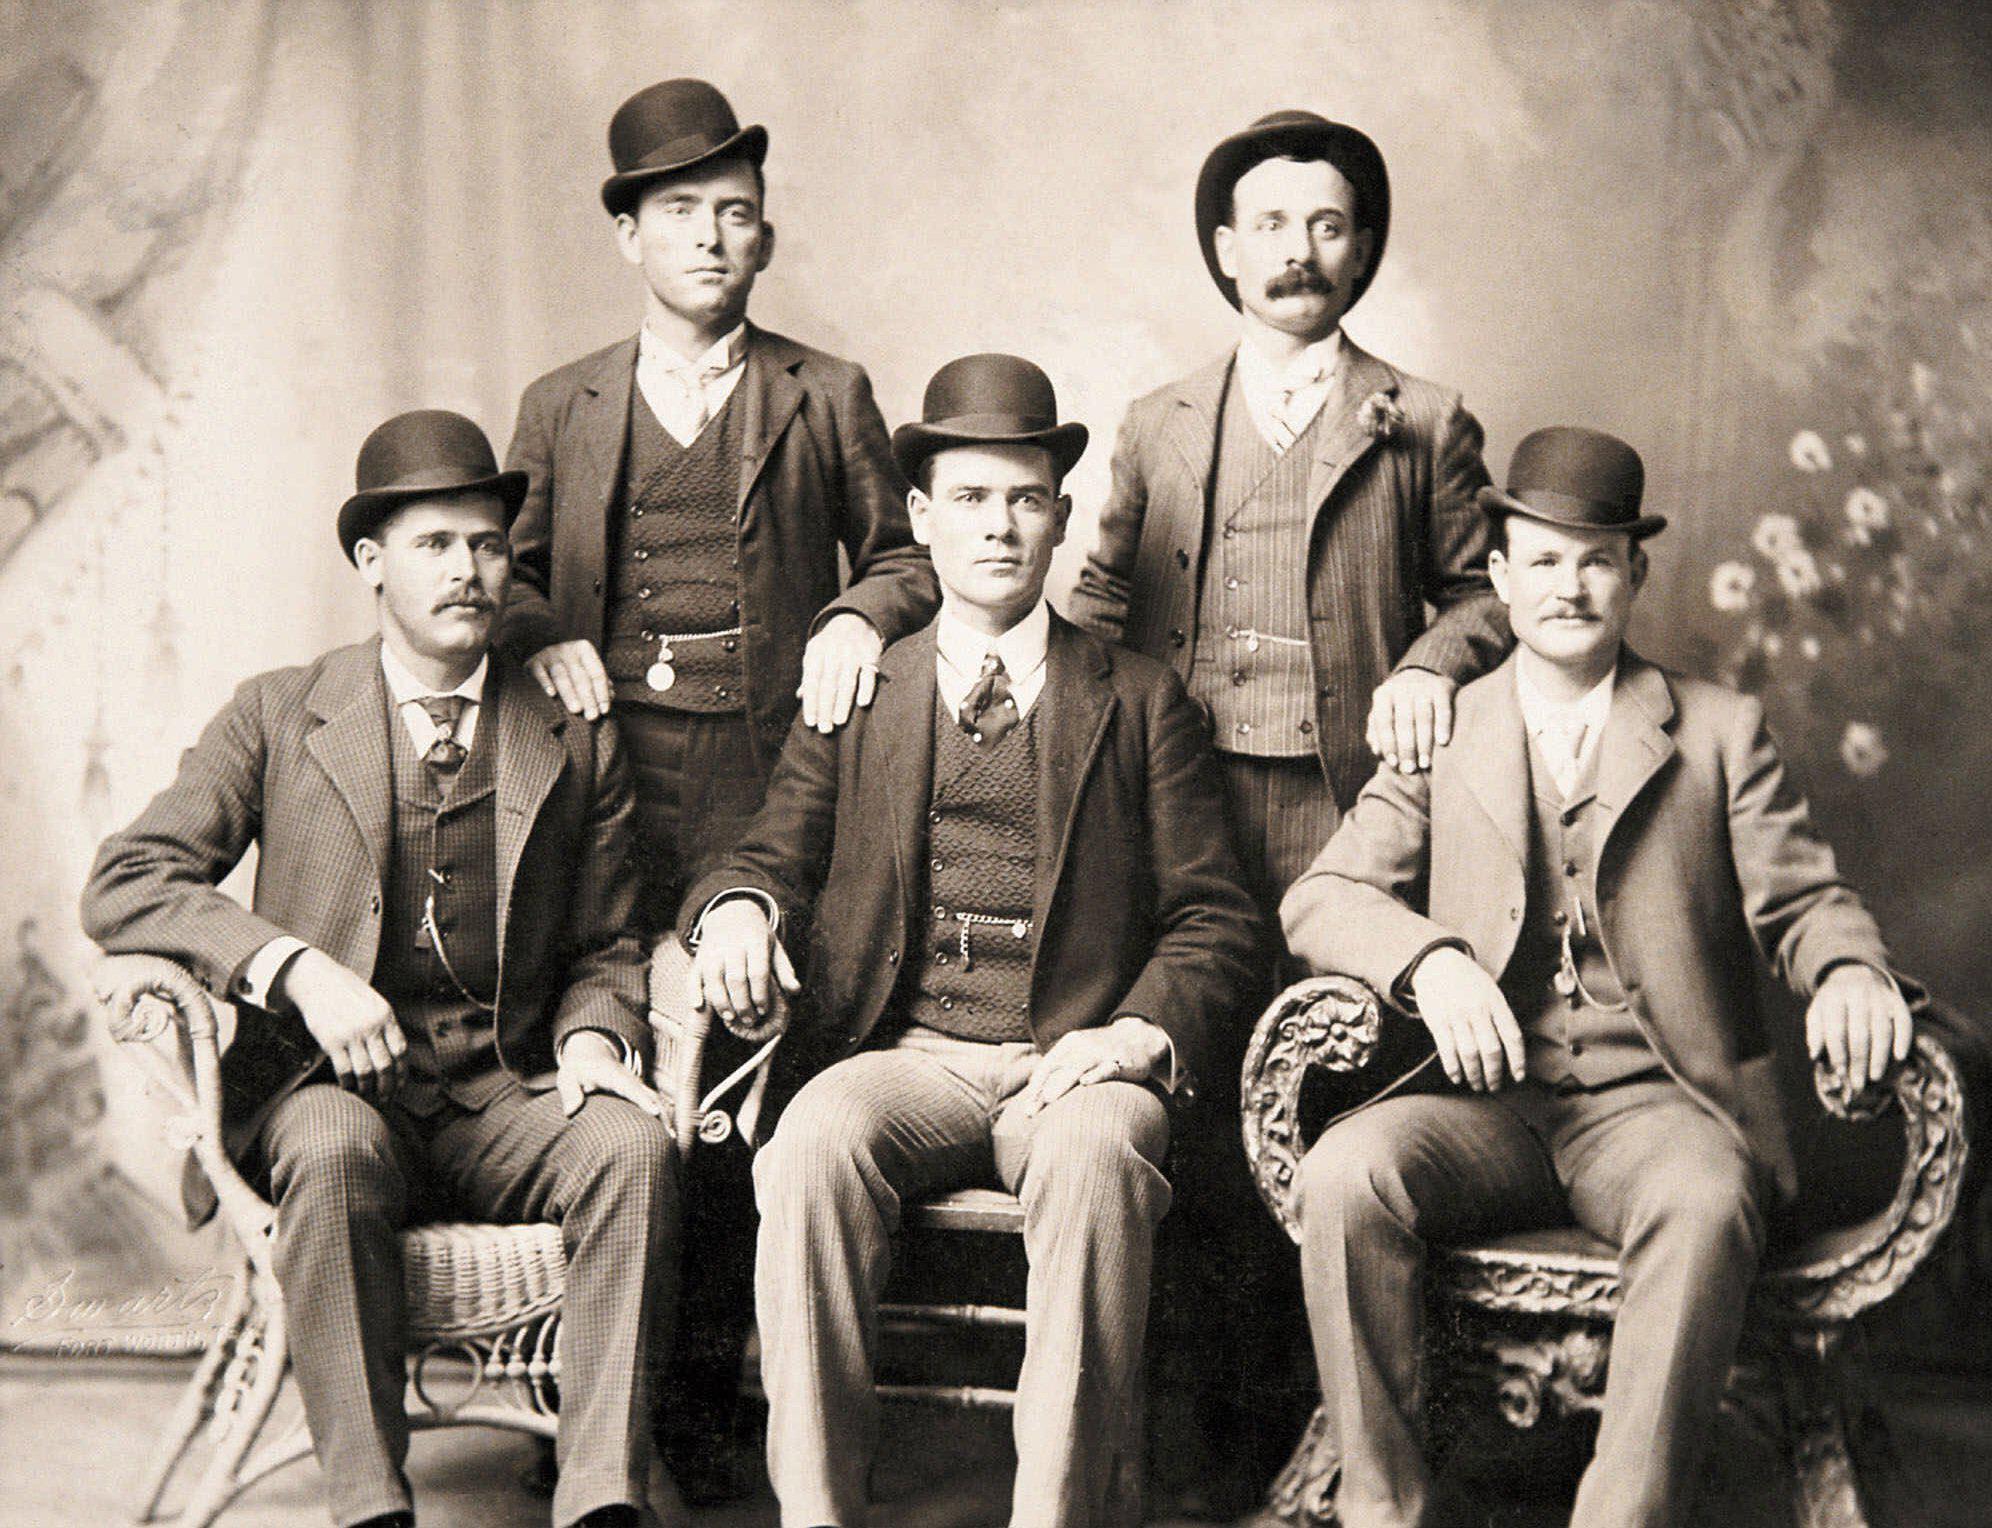 1912 hat styles for men